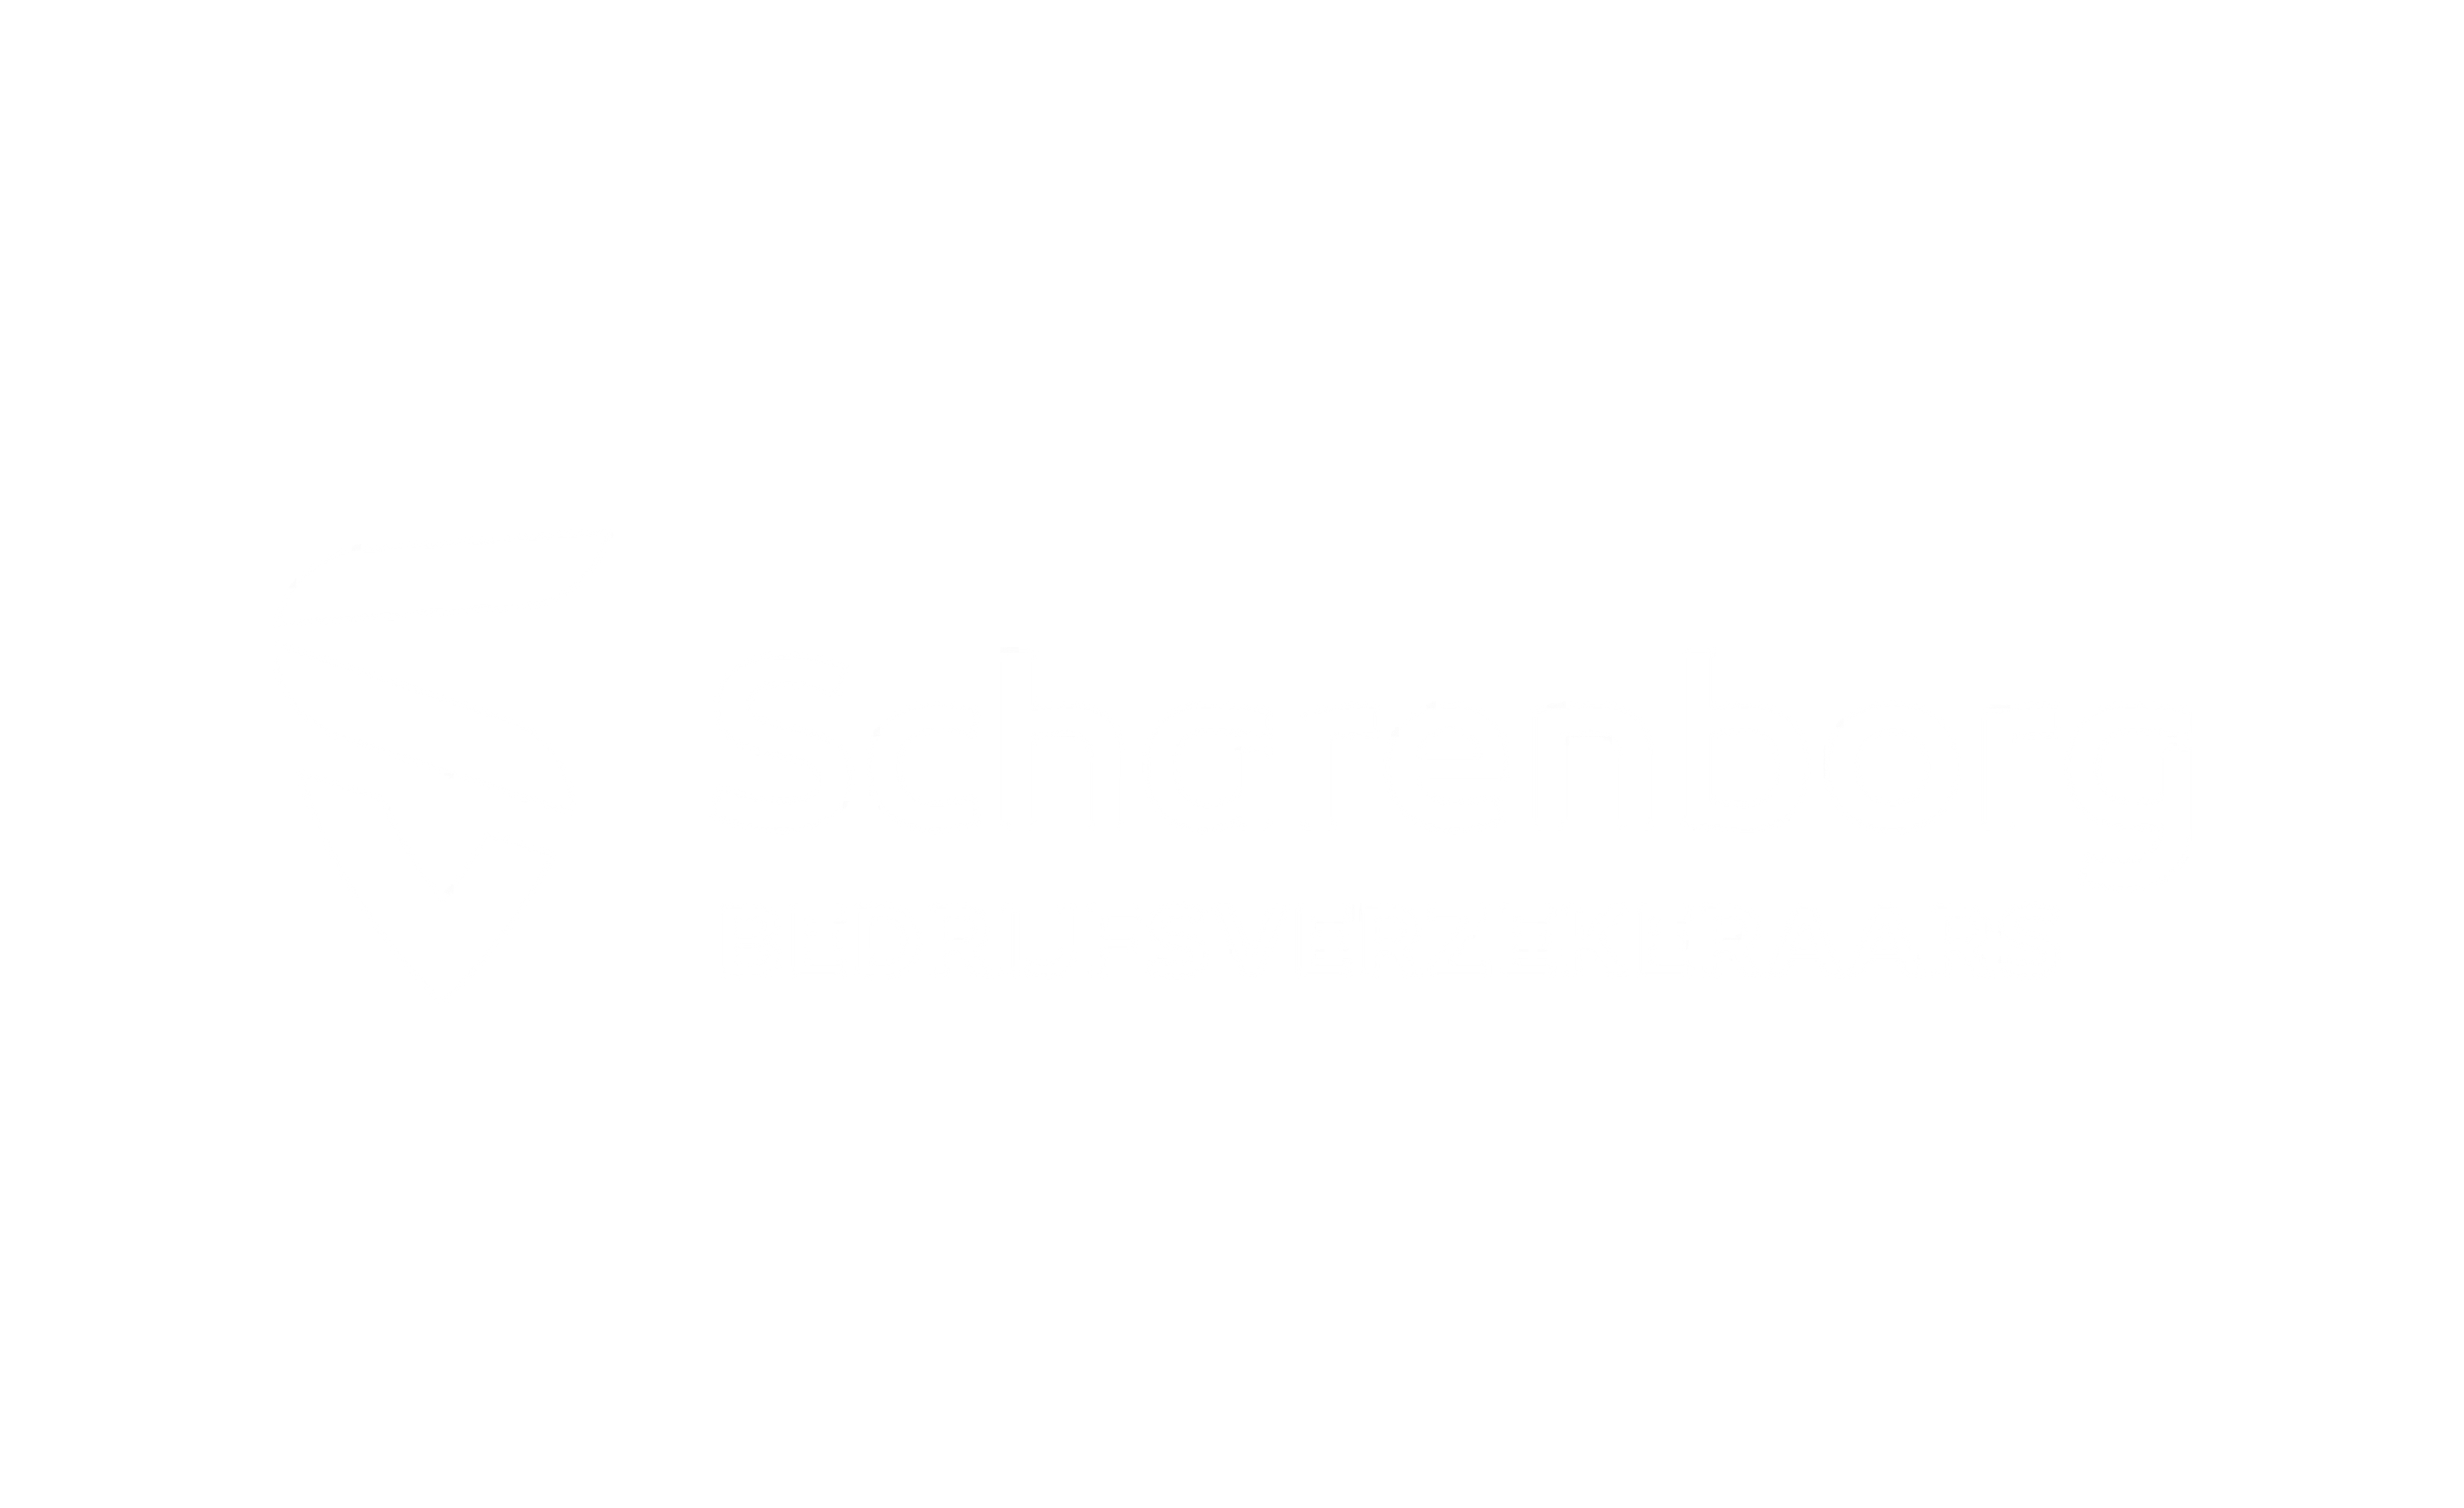 Scharenborg bedrijfsverzekeraars logo